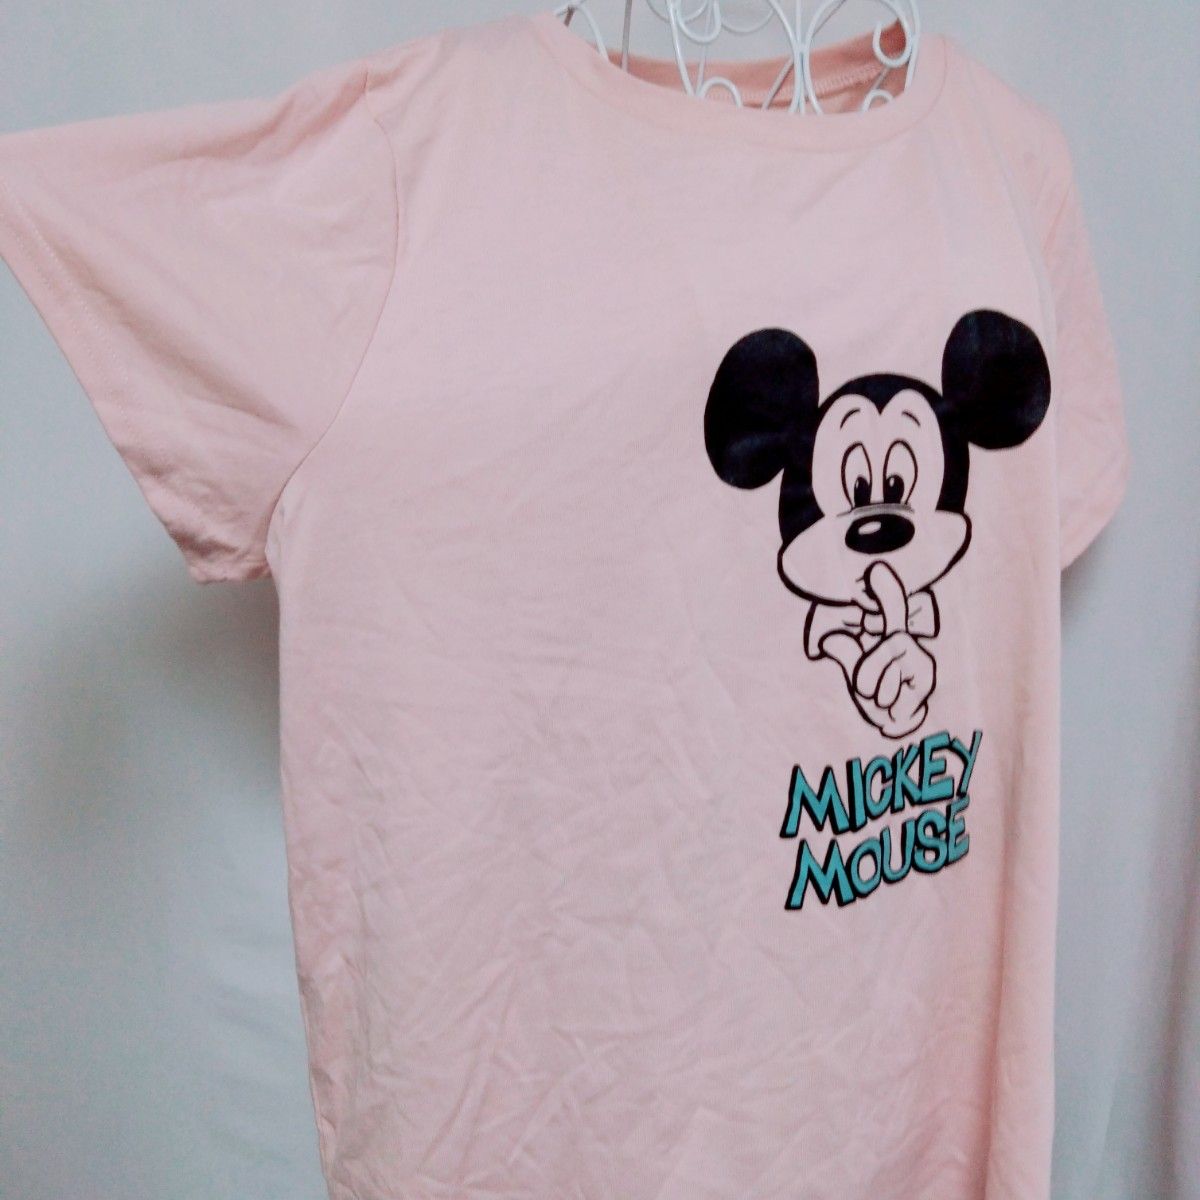 459 新品 レディース 大きいサイズ 3L 半袖 ミッキー ディズニー ピンク Tシャツ   